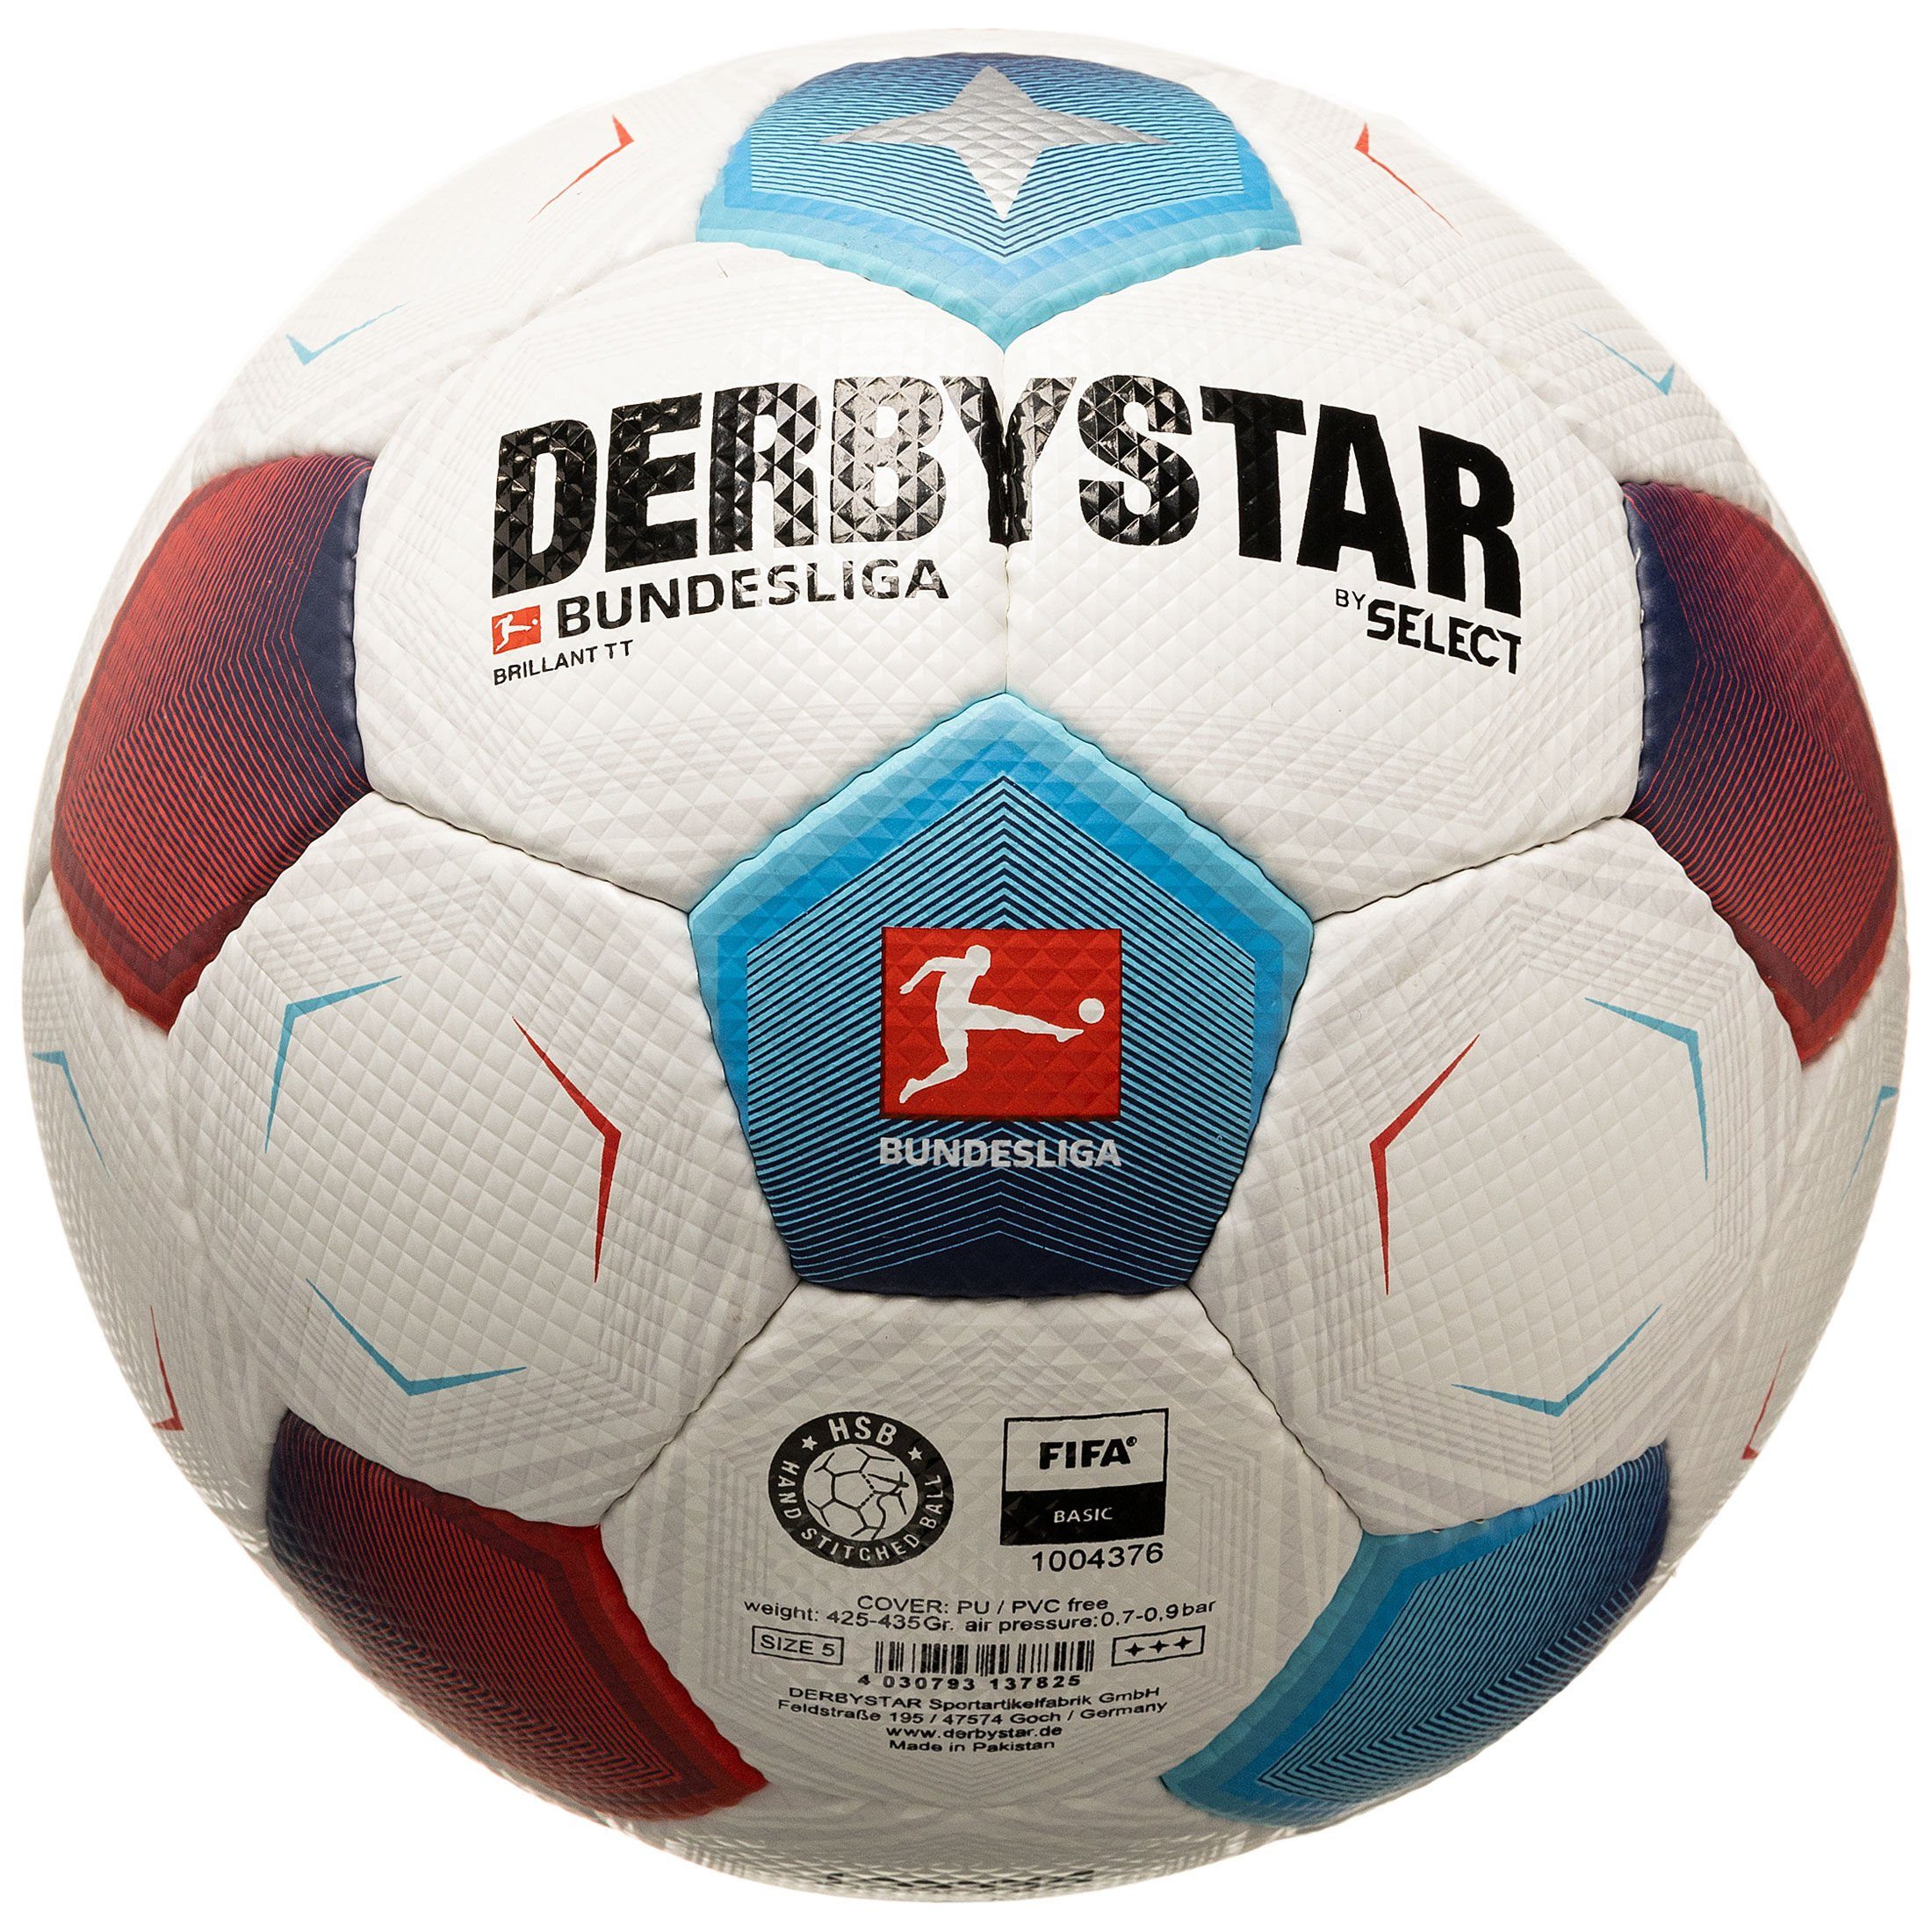 Derbystar Fußball Bundesliga Bundesliga Brillant TT v23 Fußball